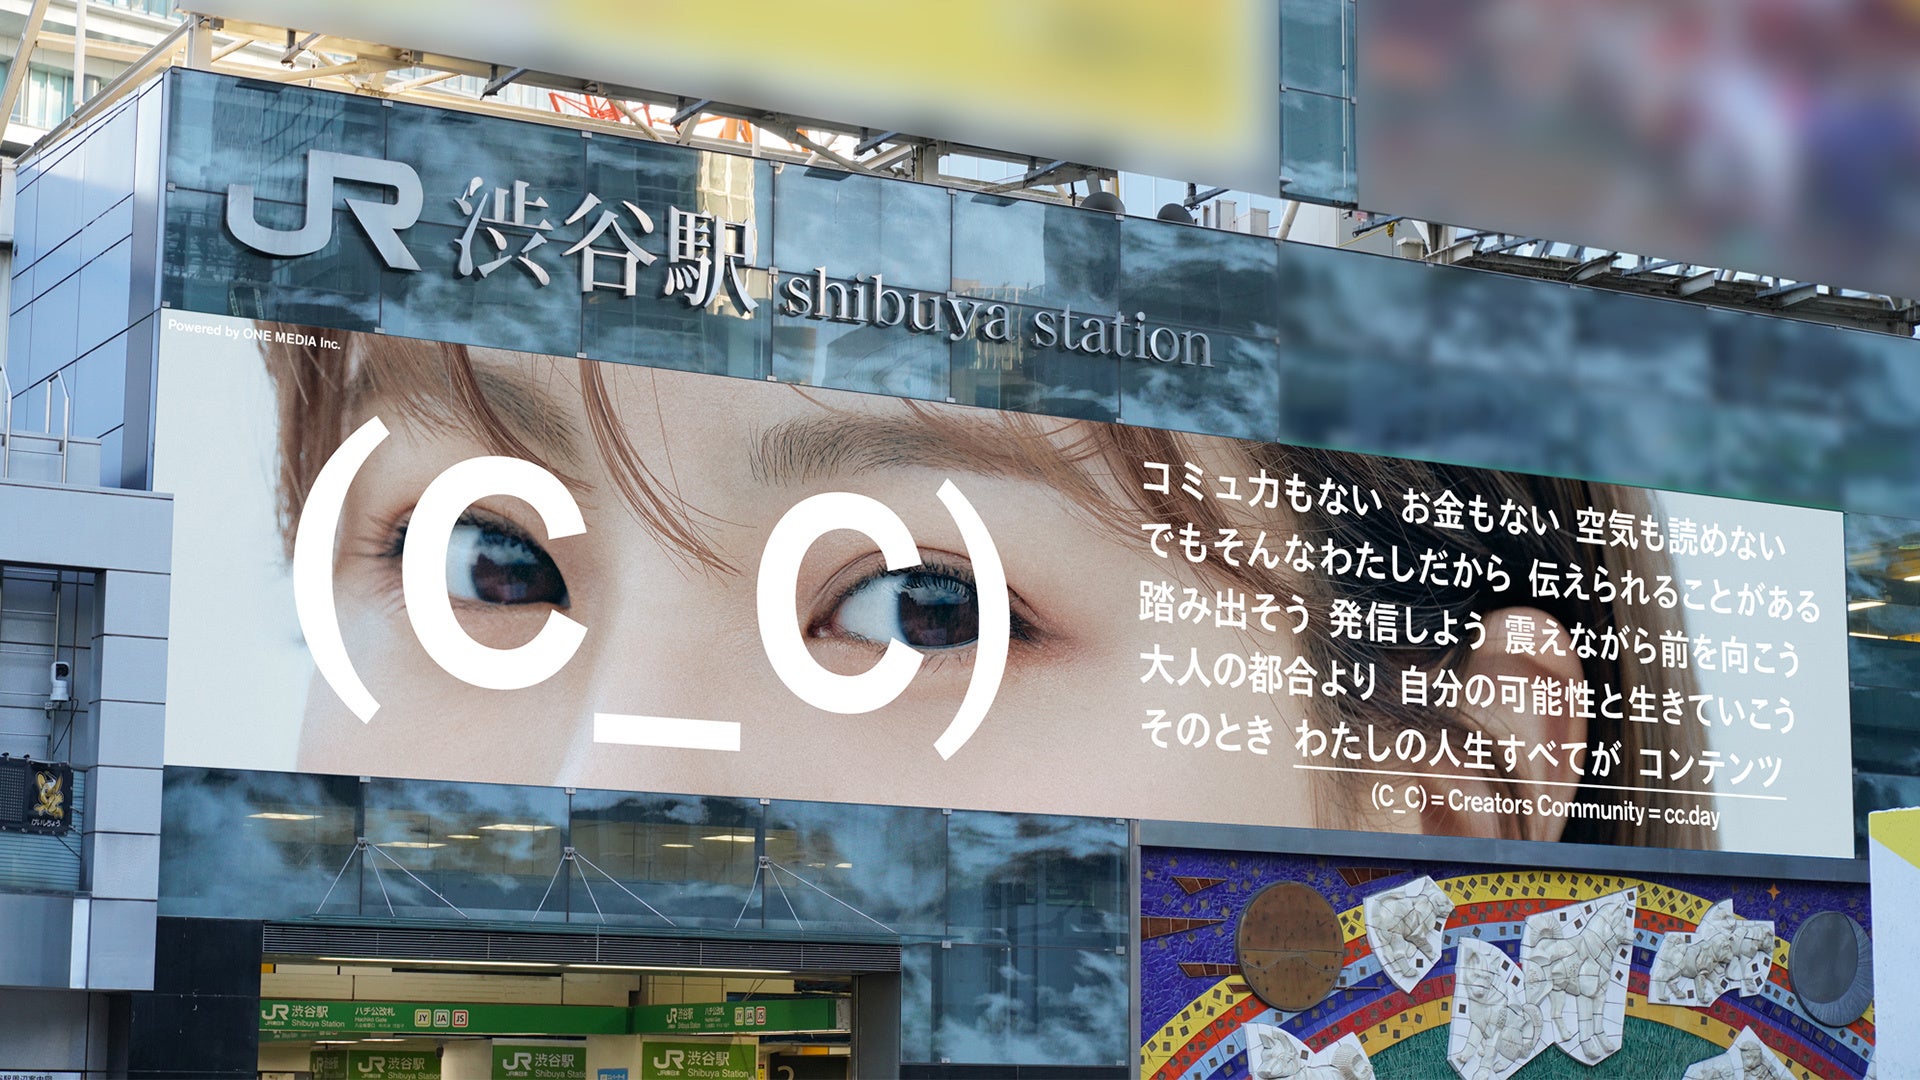 NGT48本間日陽、5月30日(月)よりJR渋谷駅巨大広告に登場さらに、TikTok「ホンマヒナタ」開設し、クリエイター活動開始「アイドル×女優×クリエイター」新たな存在へ